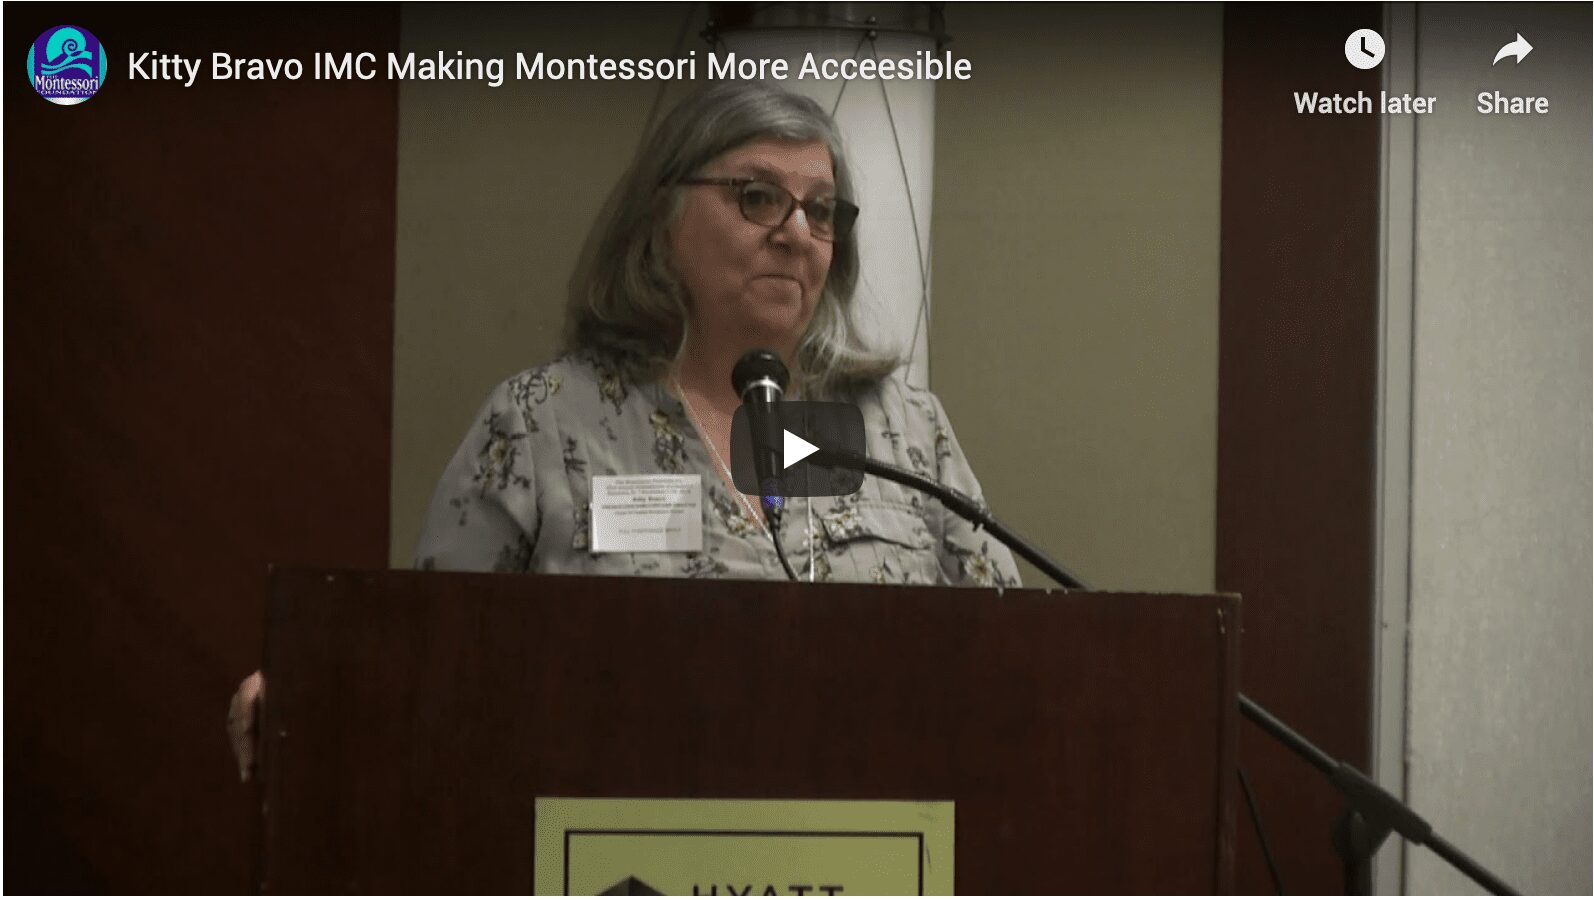 The IMC – Making Montessori More Accessible